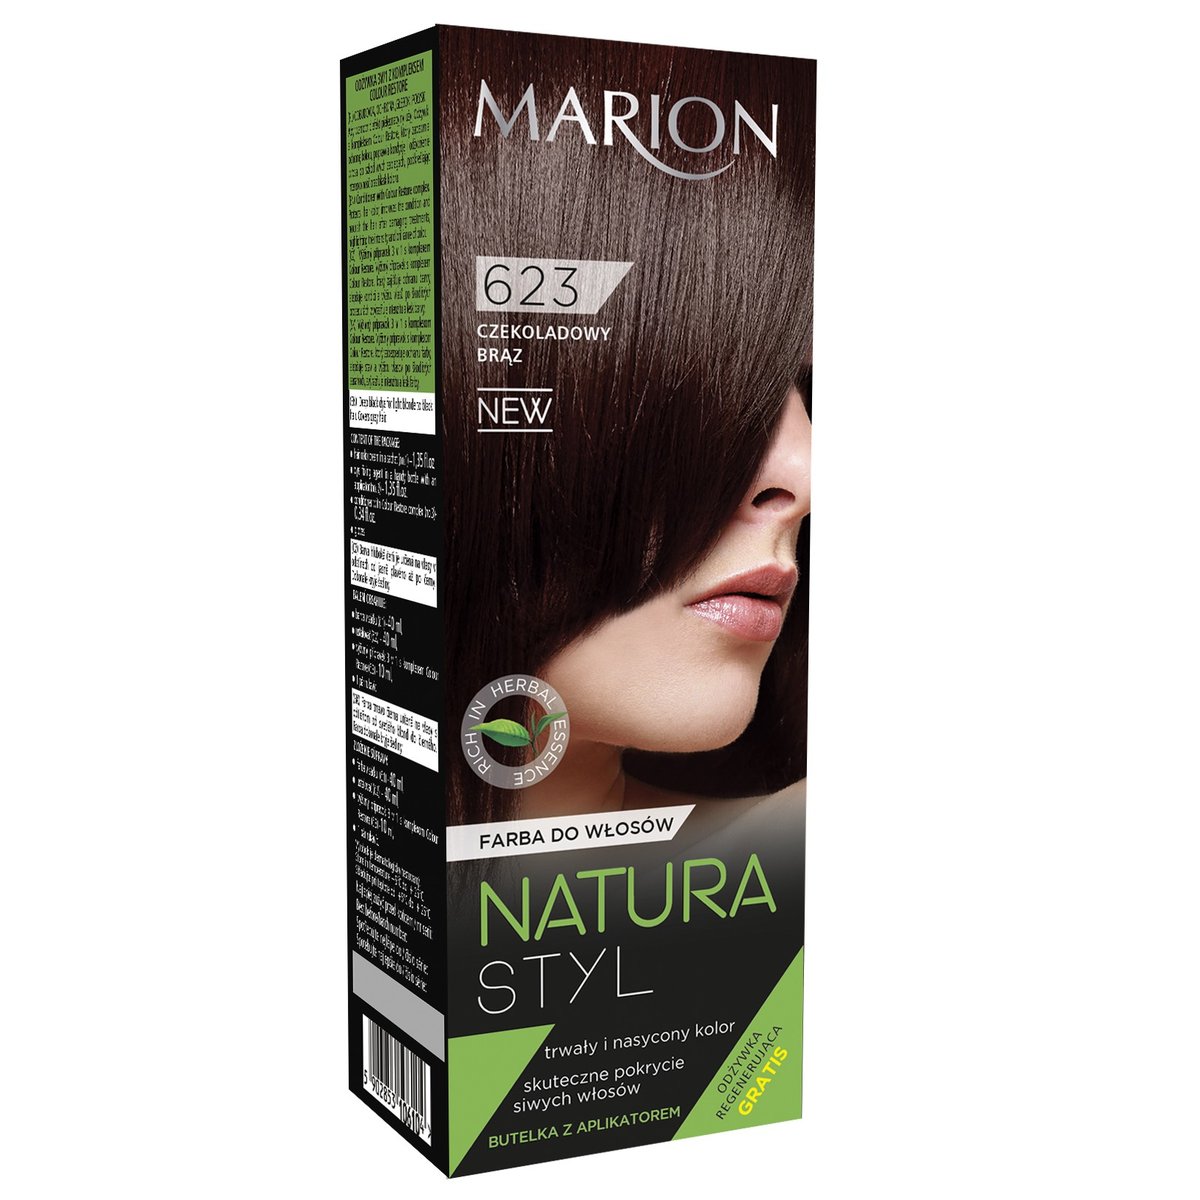 Фото - Фарба для волосся NATURA Marion,  Styl, farba do włosów 623 Czekoladowy, 40 ml 